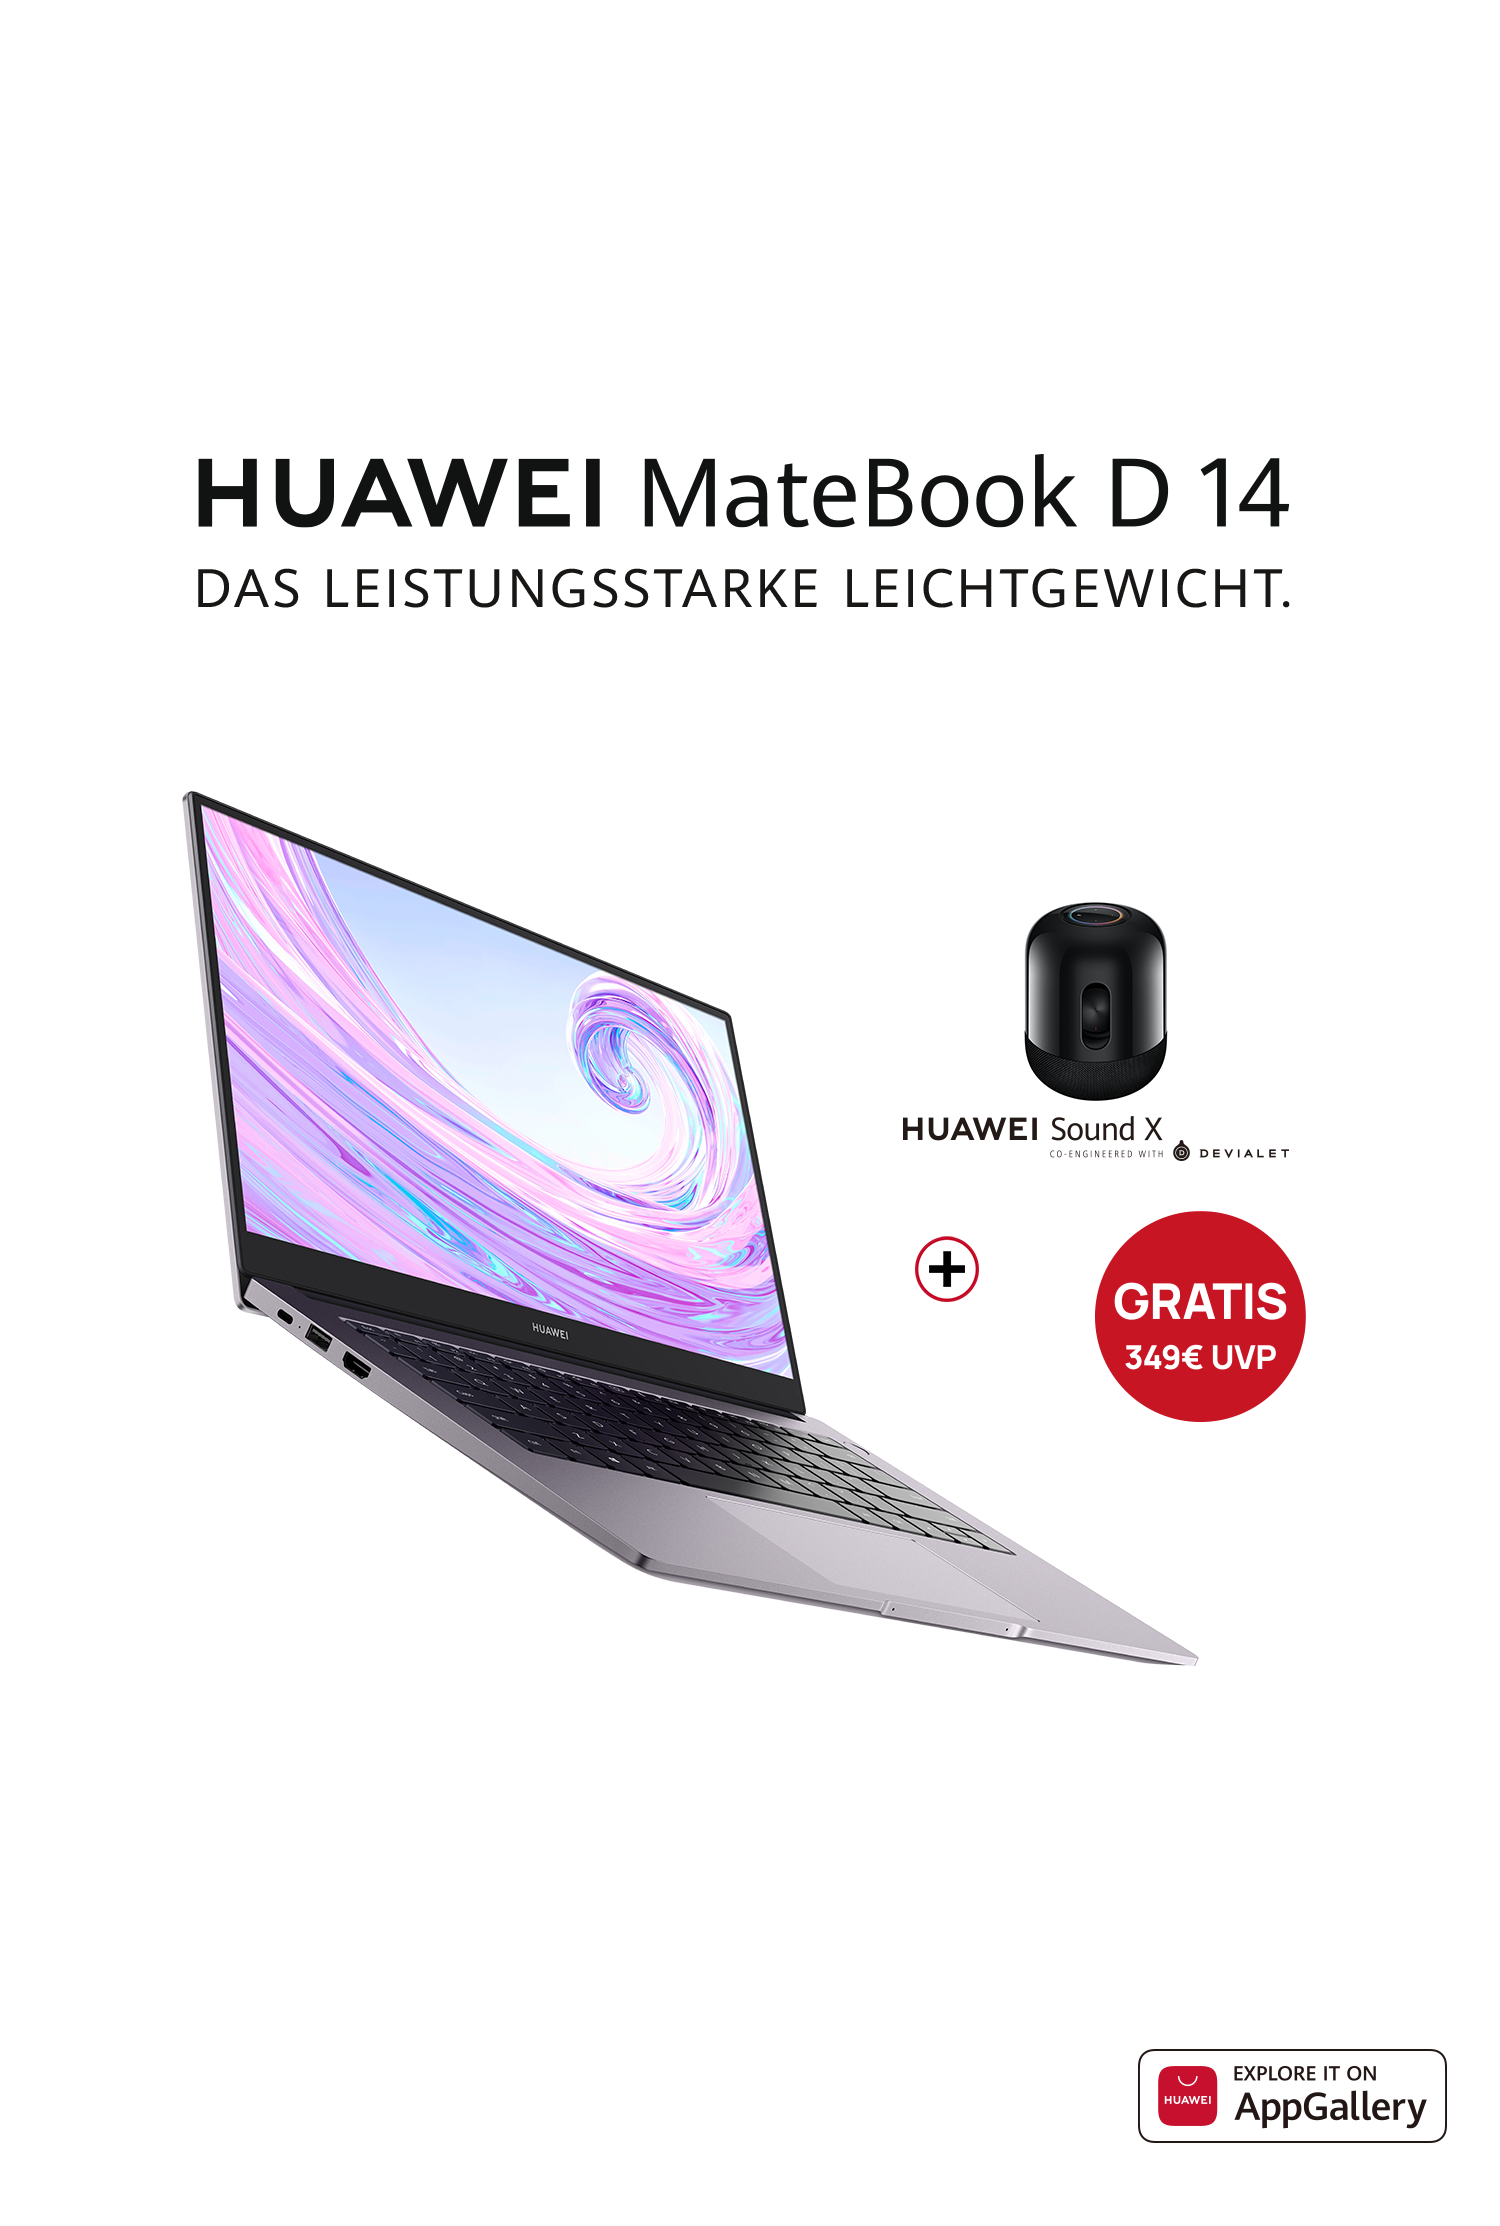 1&1 Drillisch x HUAWEI - MateBook D14 Aktion